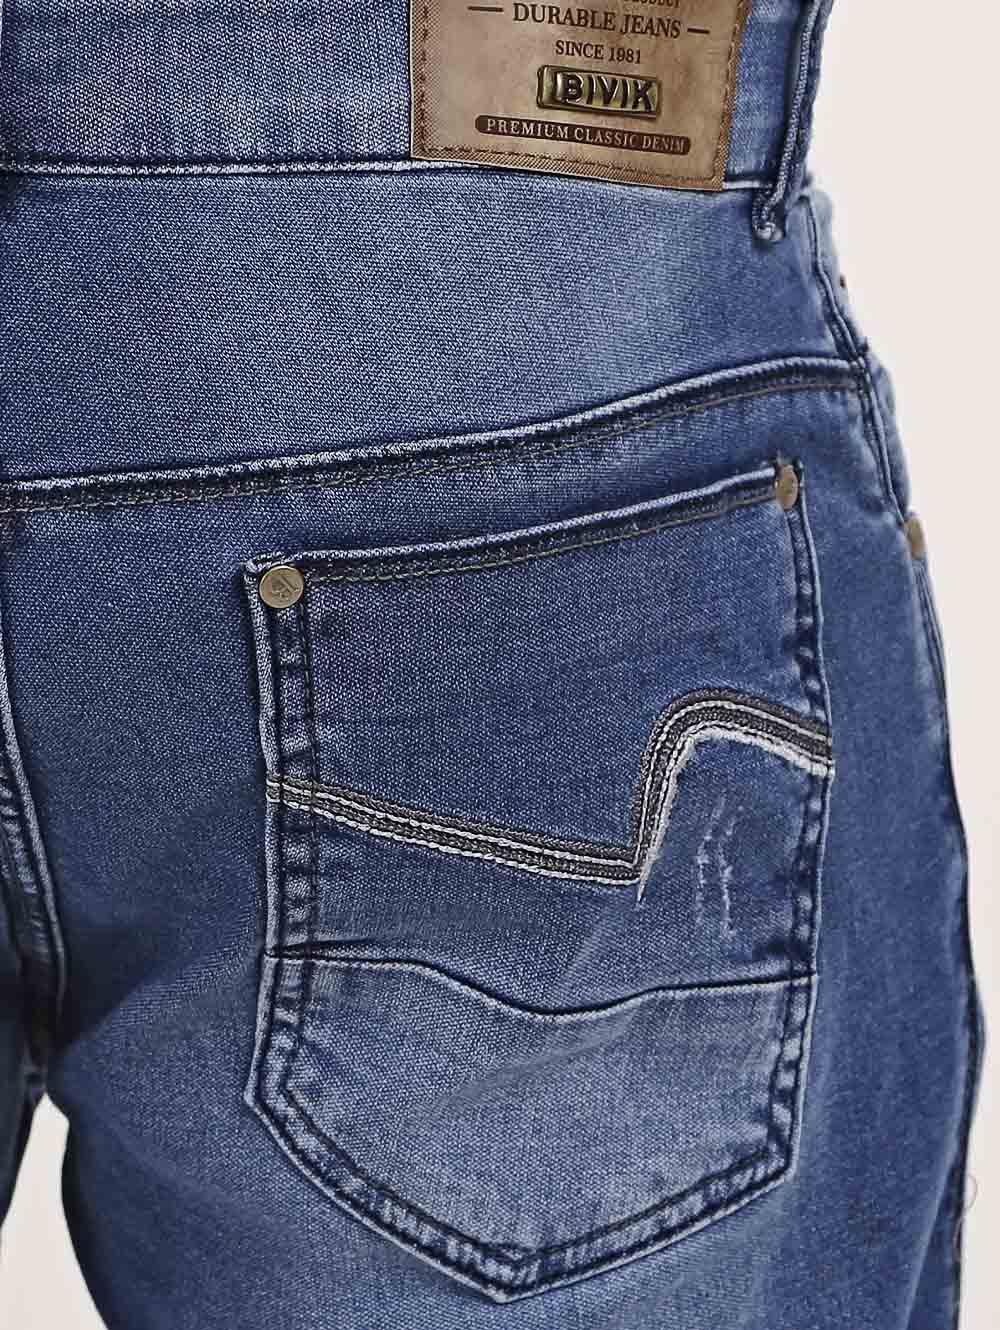 quais as melhores marcas de calça jeans